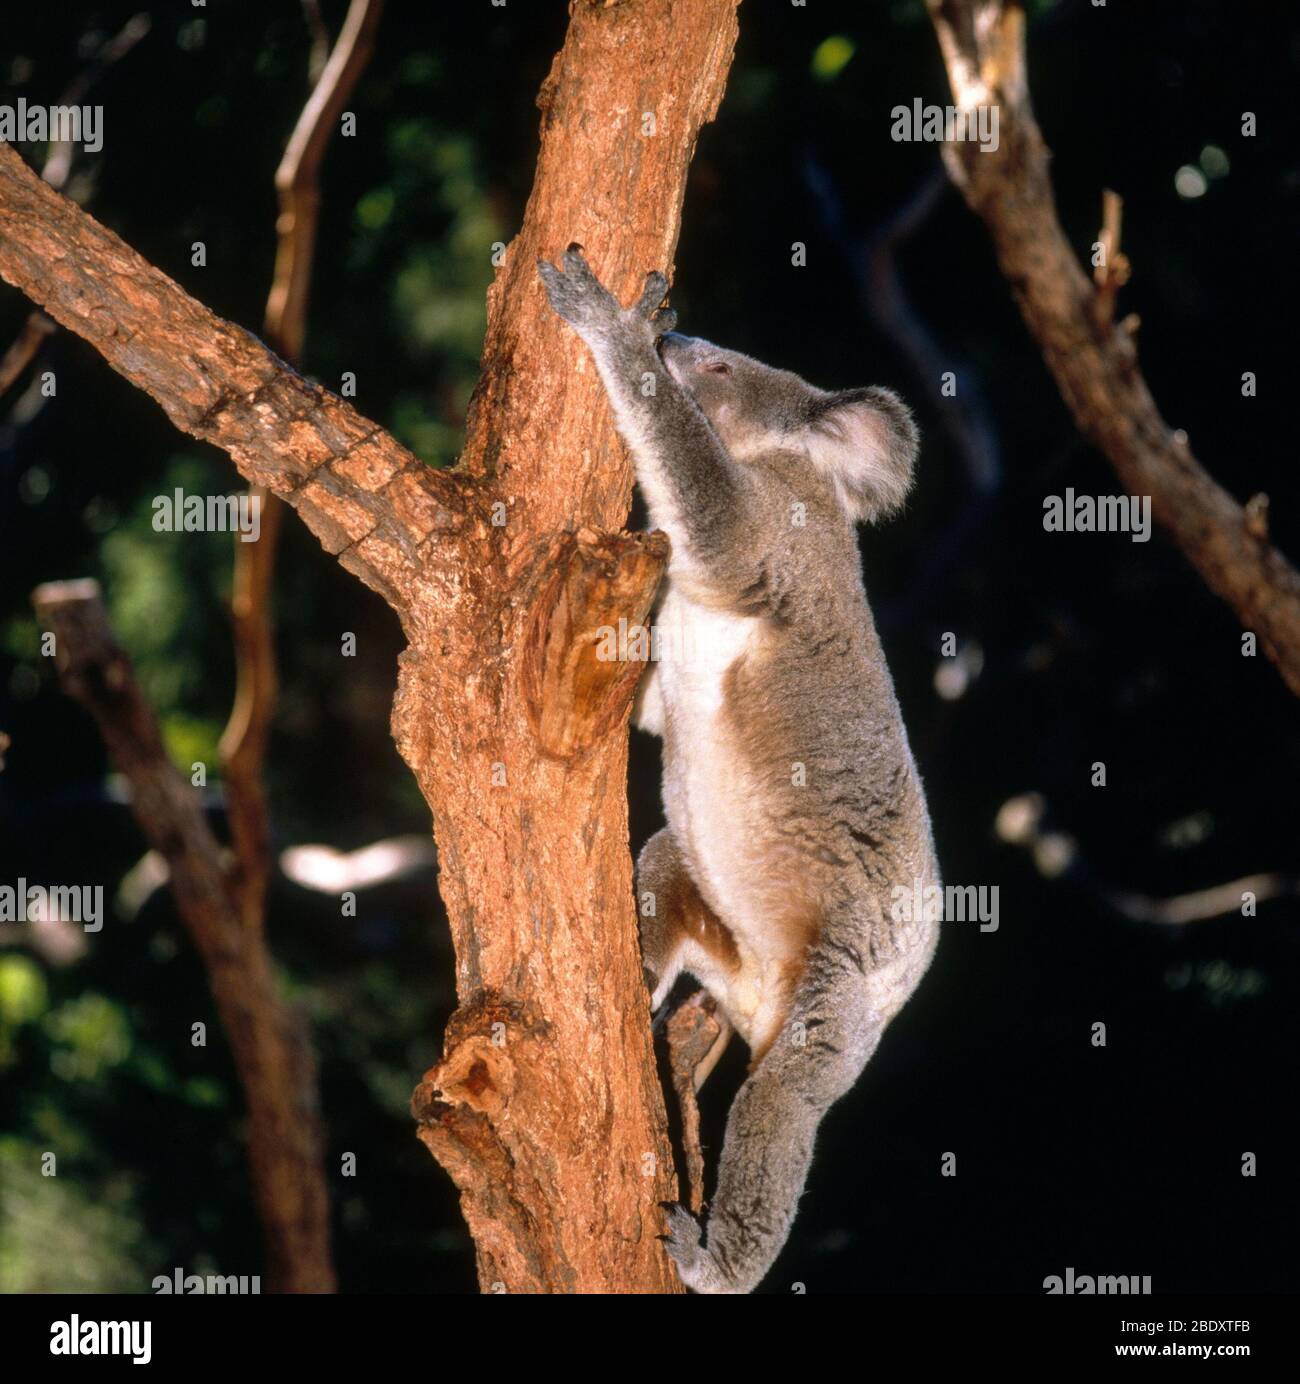 Koala Climbing Tree Stock Photo